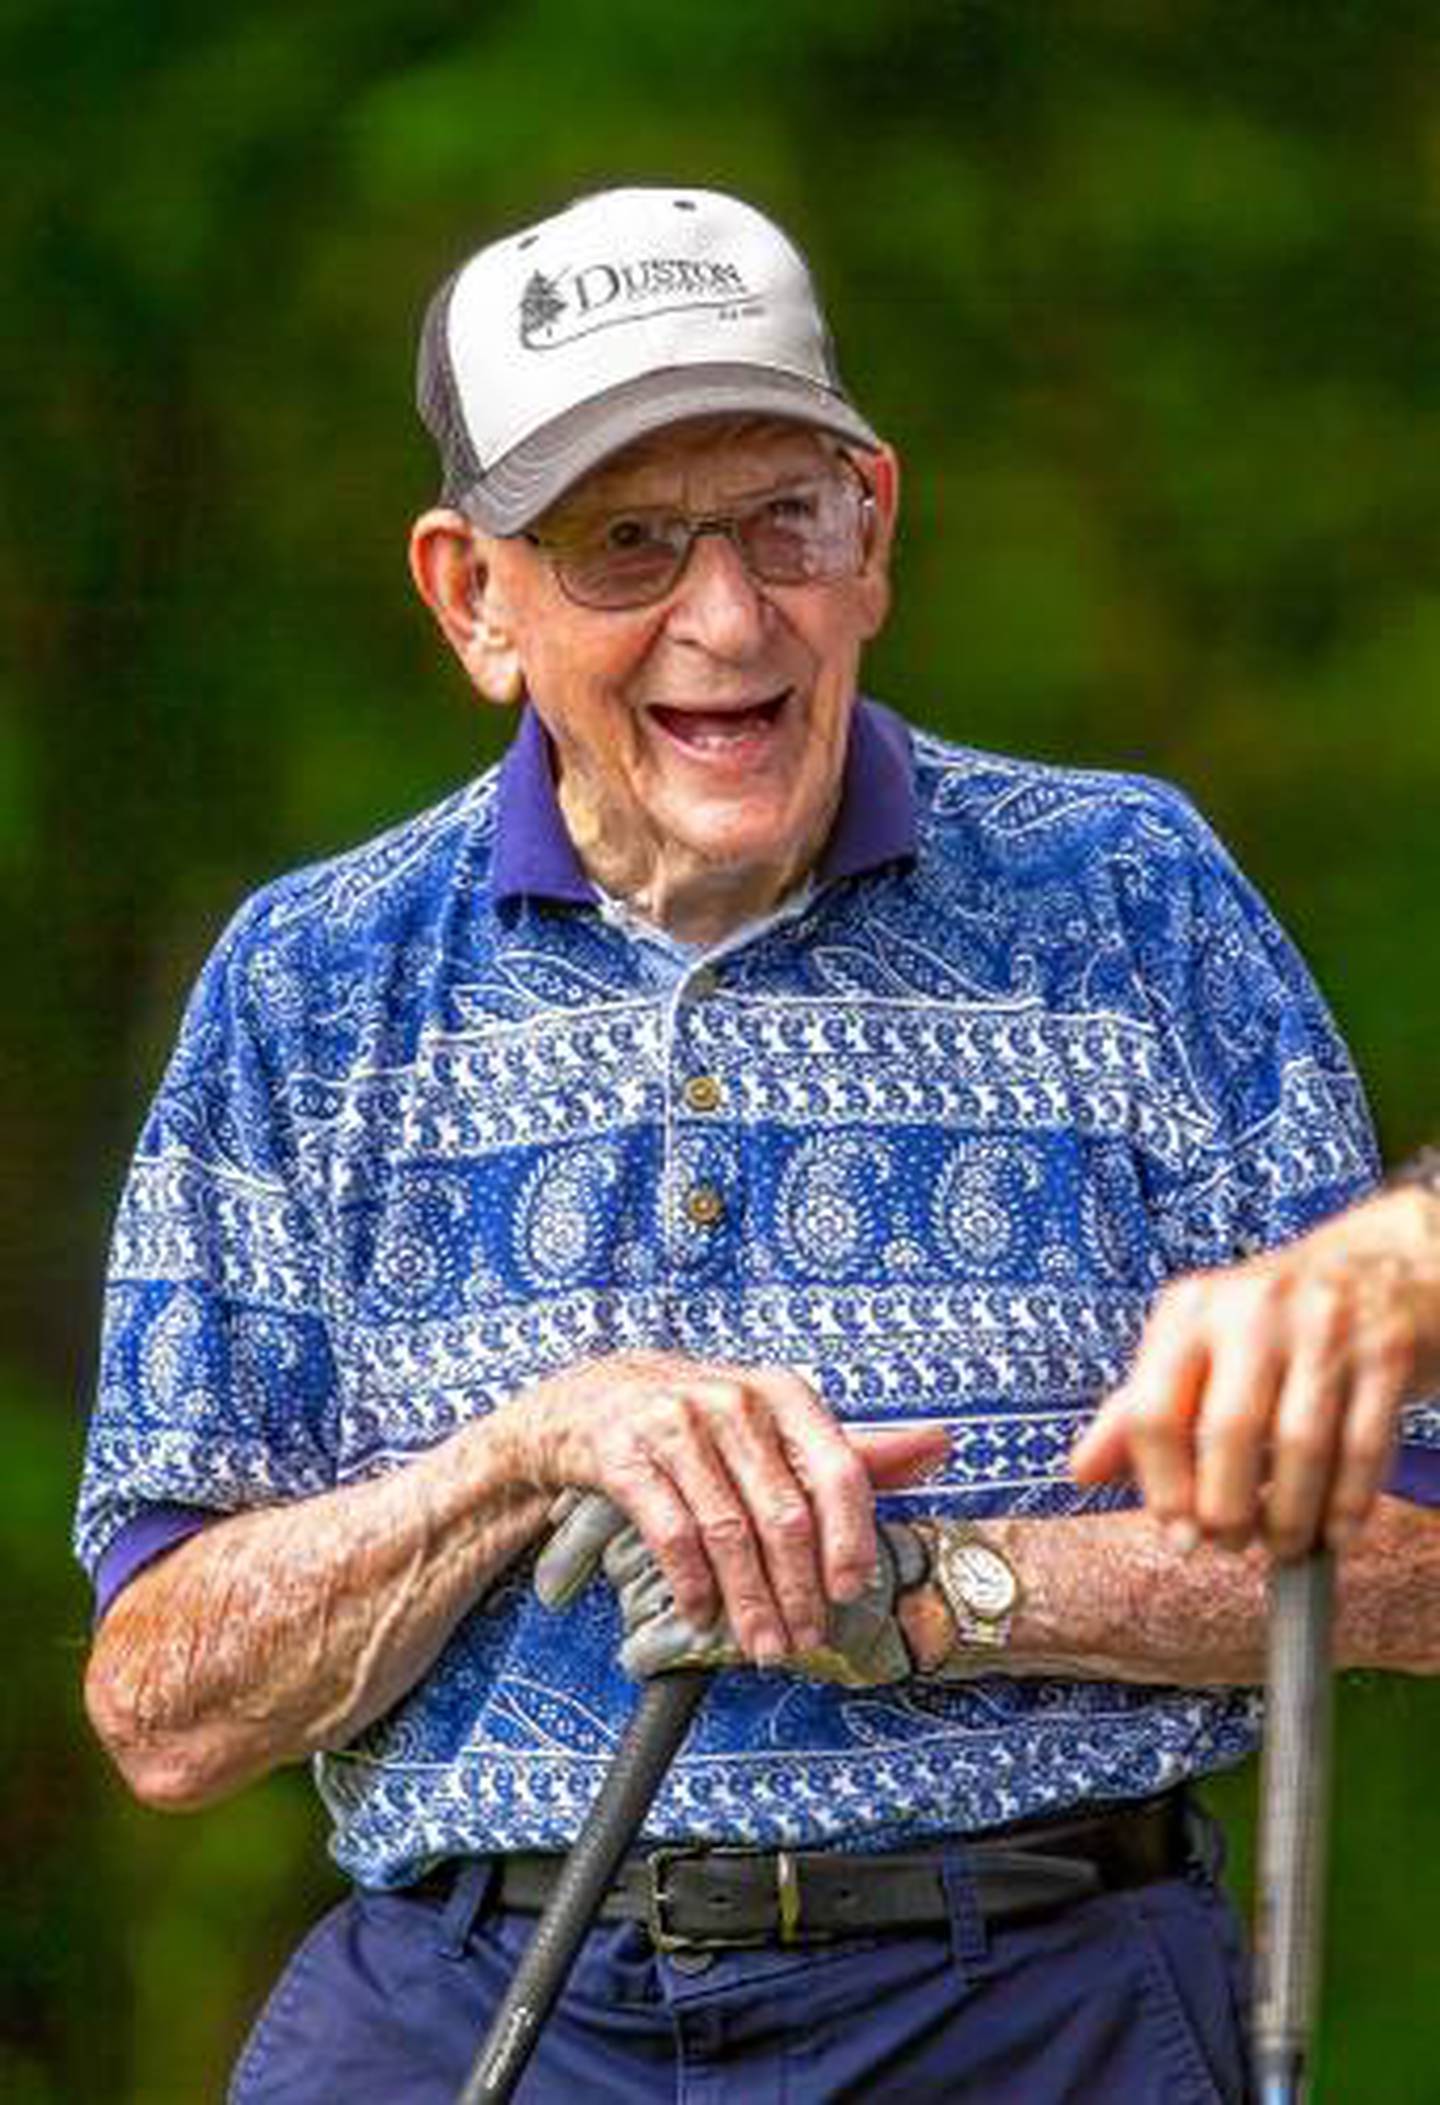 Floyd Severance de 98 años, es un amante y practicante del golf.